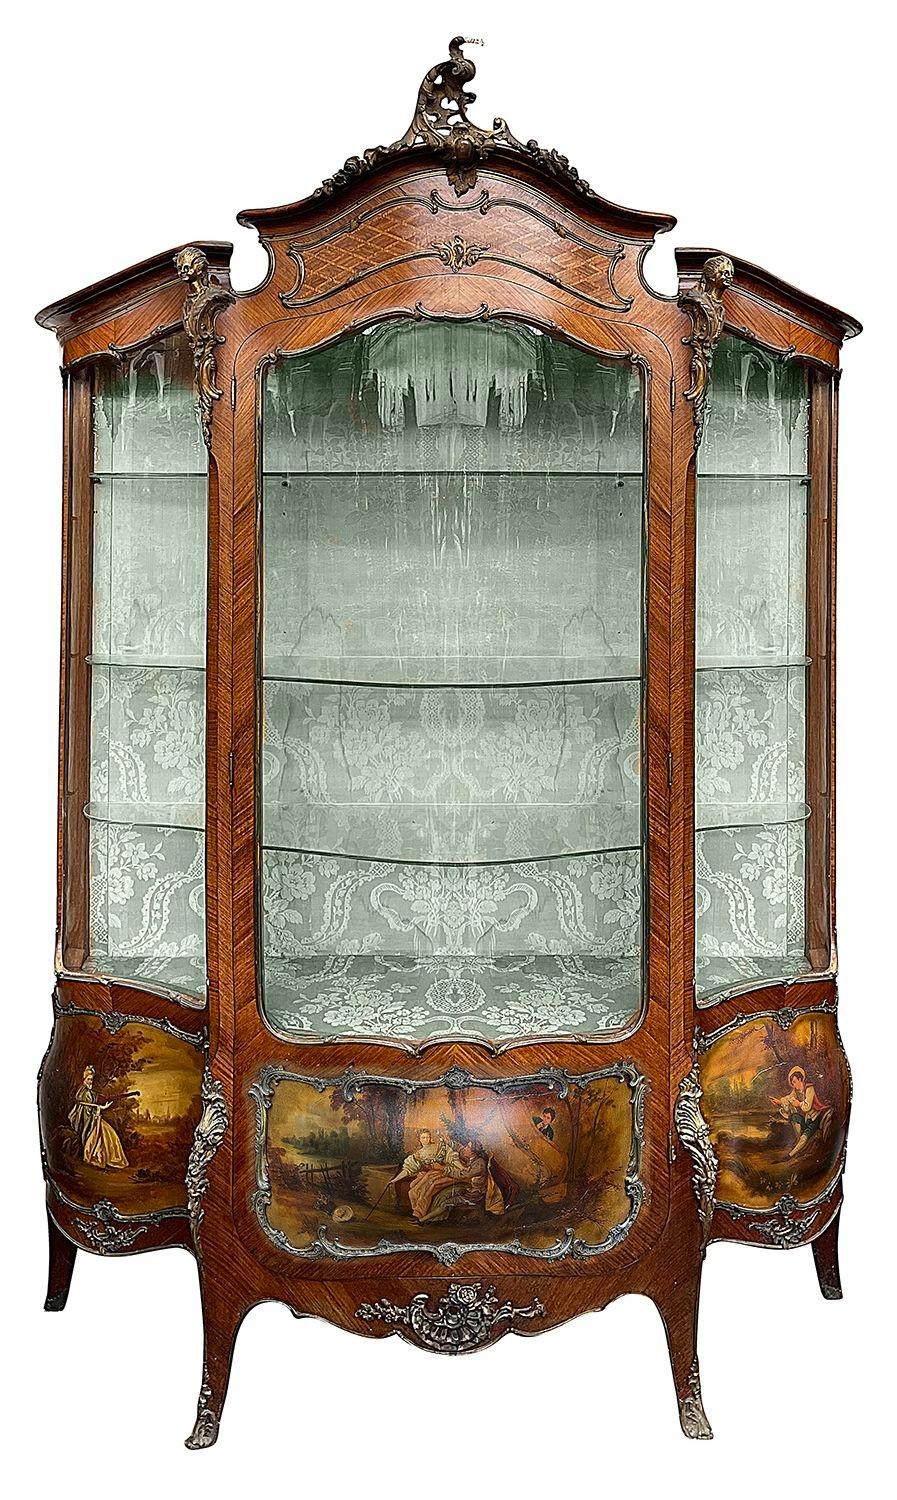 Paire de vitrines appariées en bois de roi français du XIXe siècle à façade serpentine, chacune avec des montures classiques en bronze doré, des étagères réglables à l'intérieur, des panneaux peints à la main par Martine représentant des scènes